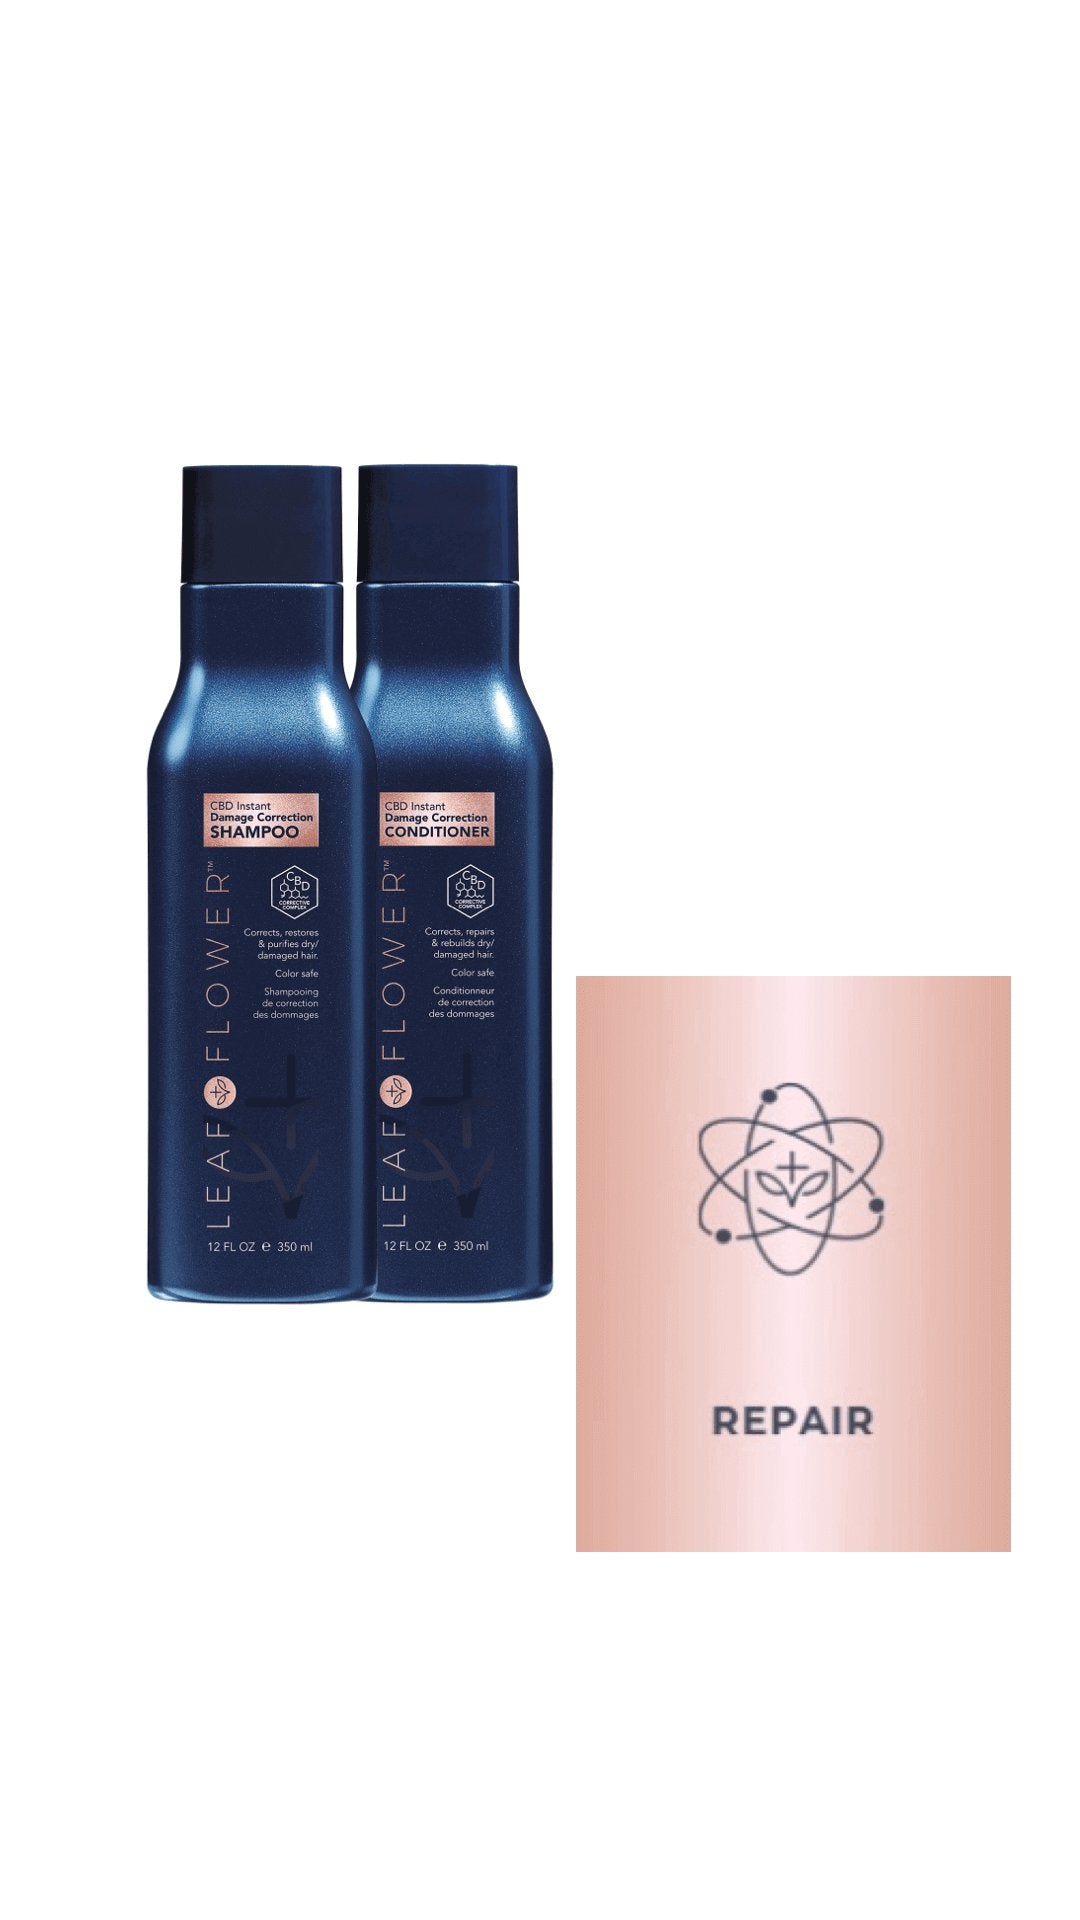 Leaf and Flower Instant Damage Correction Shampoo & Conditioner Correction Duo a Shampoo & Conditioner Sets